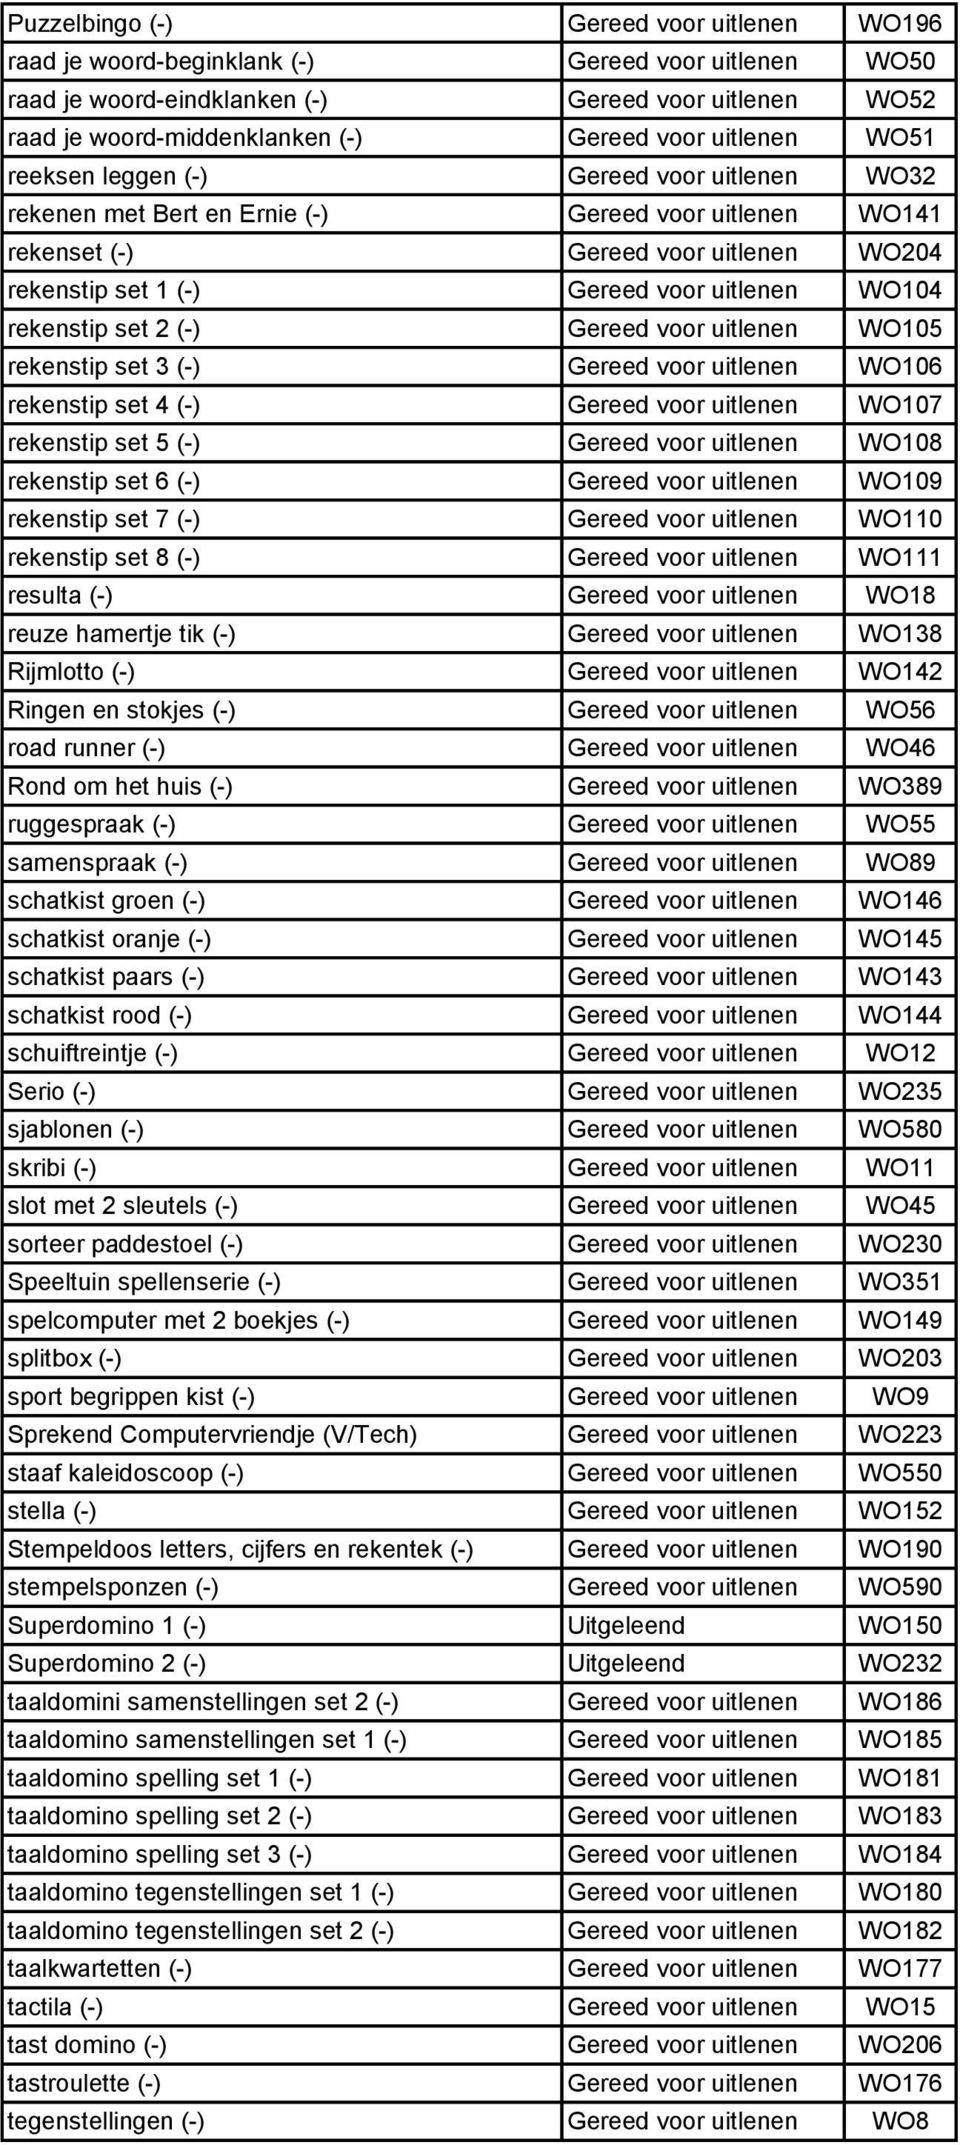 WO104 rekenstip set 2 (-) Gereed voor uitlenen WO105 rekenstip set 3 (-) Gereed voor uitlenen WO106 rekenstip set 4 (-) Gereed voor uitlenen WO107 rekenstip set 5 (-) Gereed voor uitlenen WO108